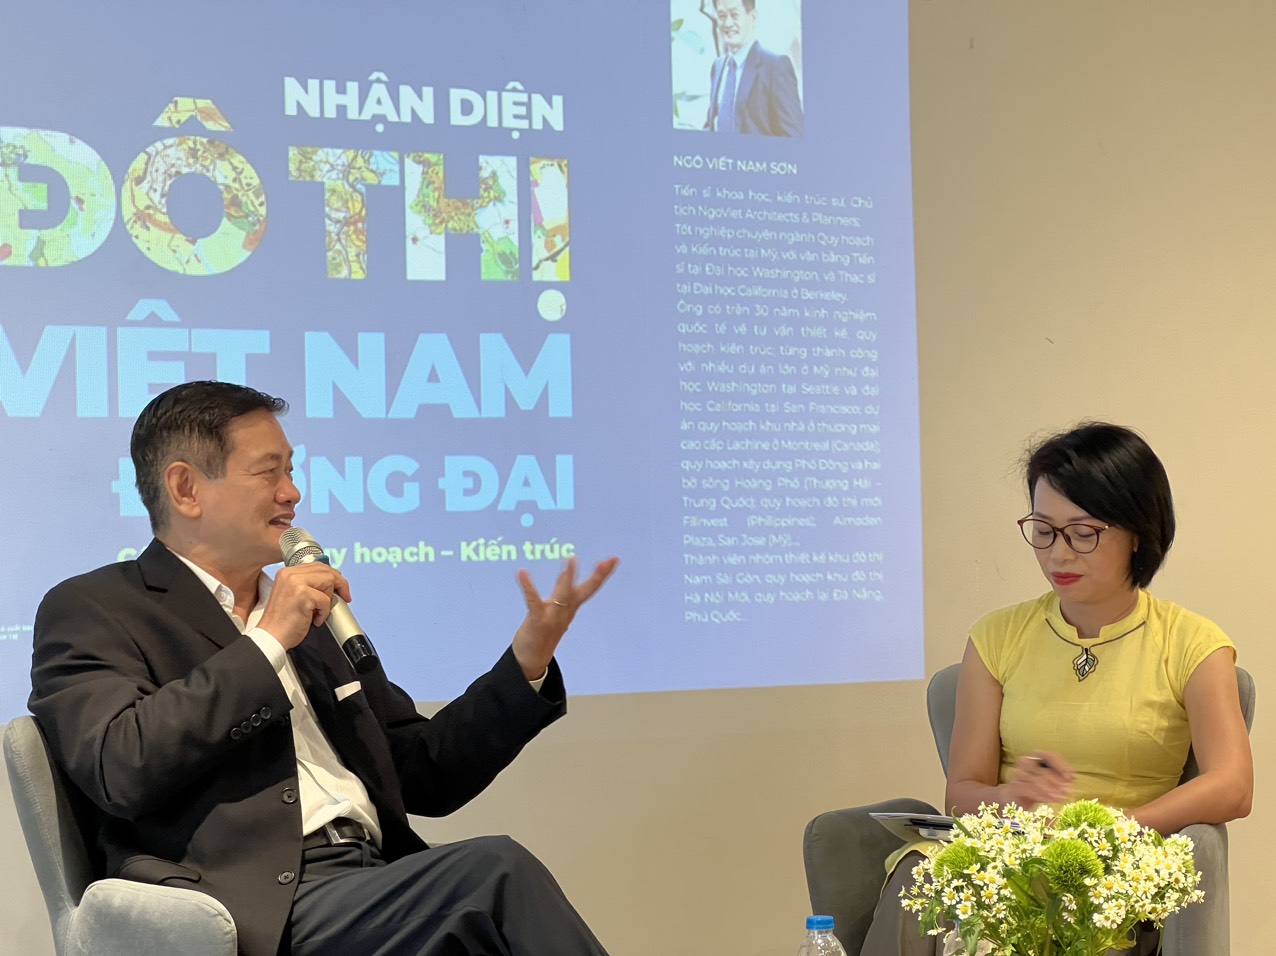 Kiến trúc sư Ngô Viết Nam Sơn và Phó Giáo sư, Tiến sĩ, kiến trúc sư Nguyễn Hạnh Nguyên tại buổi trò chuyện về sách